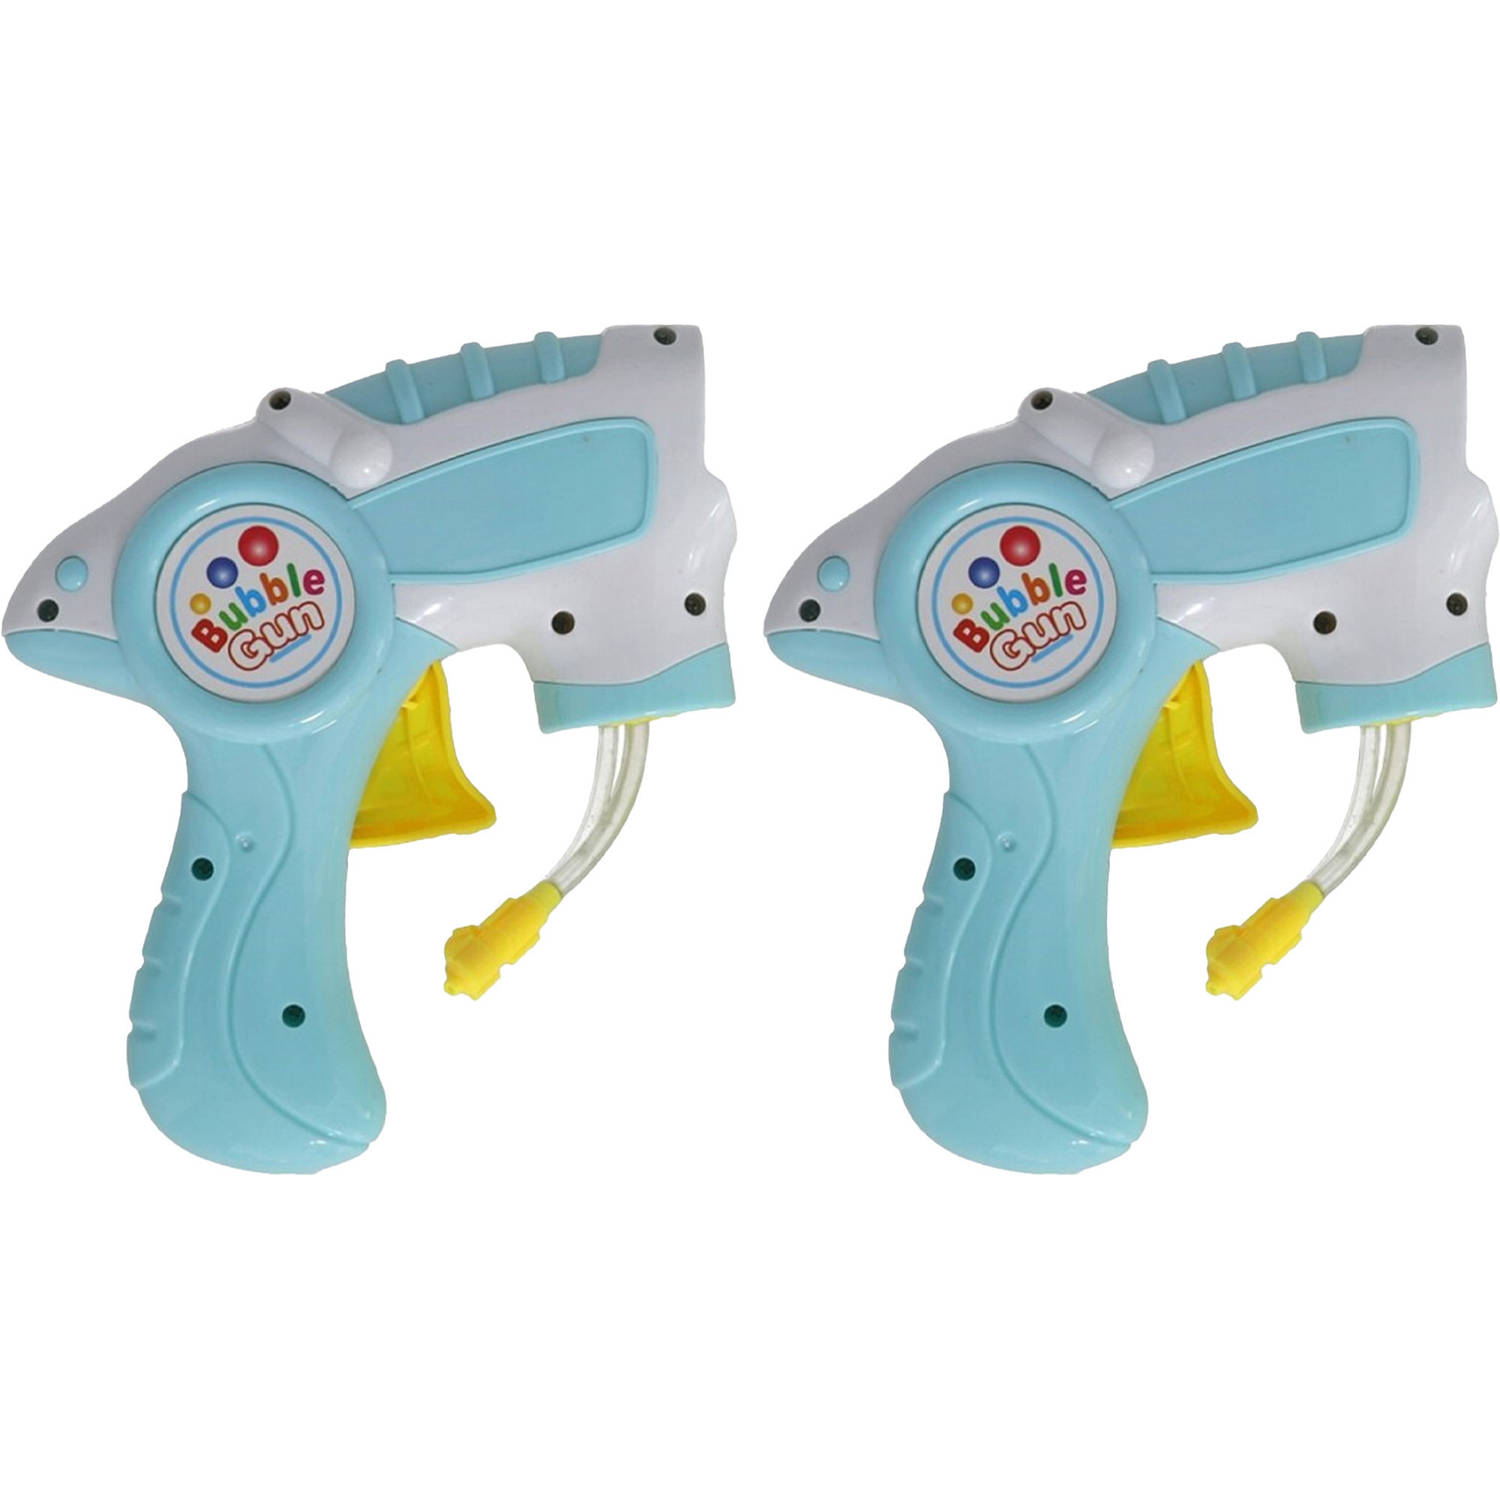 Bellenblaas speelgoed pistool 2x met vullingen lichtblauw 15 cm plastic bellen blazen Bellenblaas